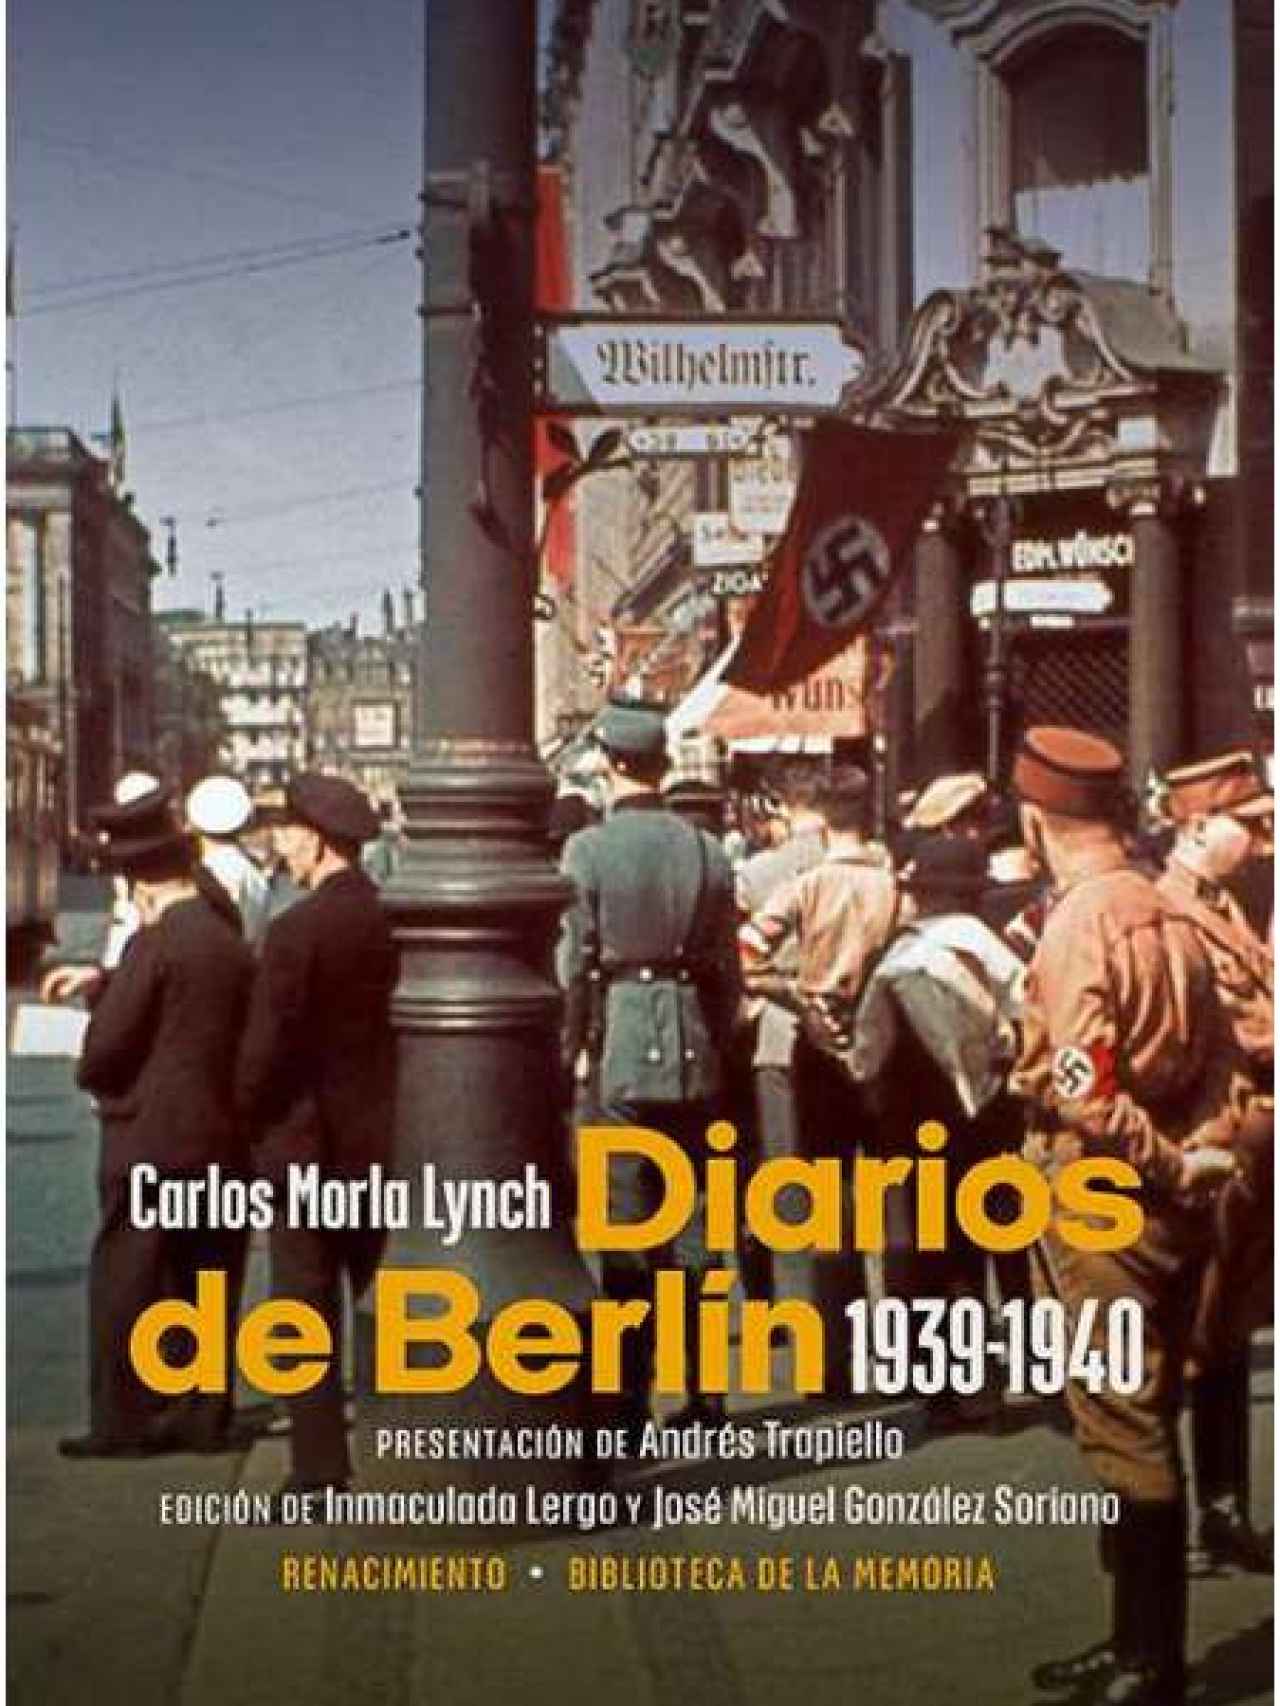 'Diarios de Berlin' de Carlos Morla Lynch